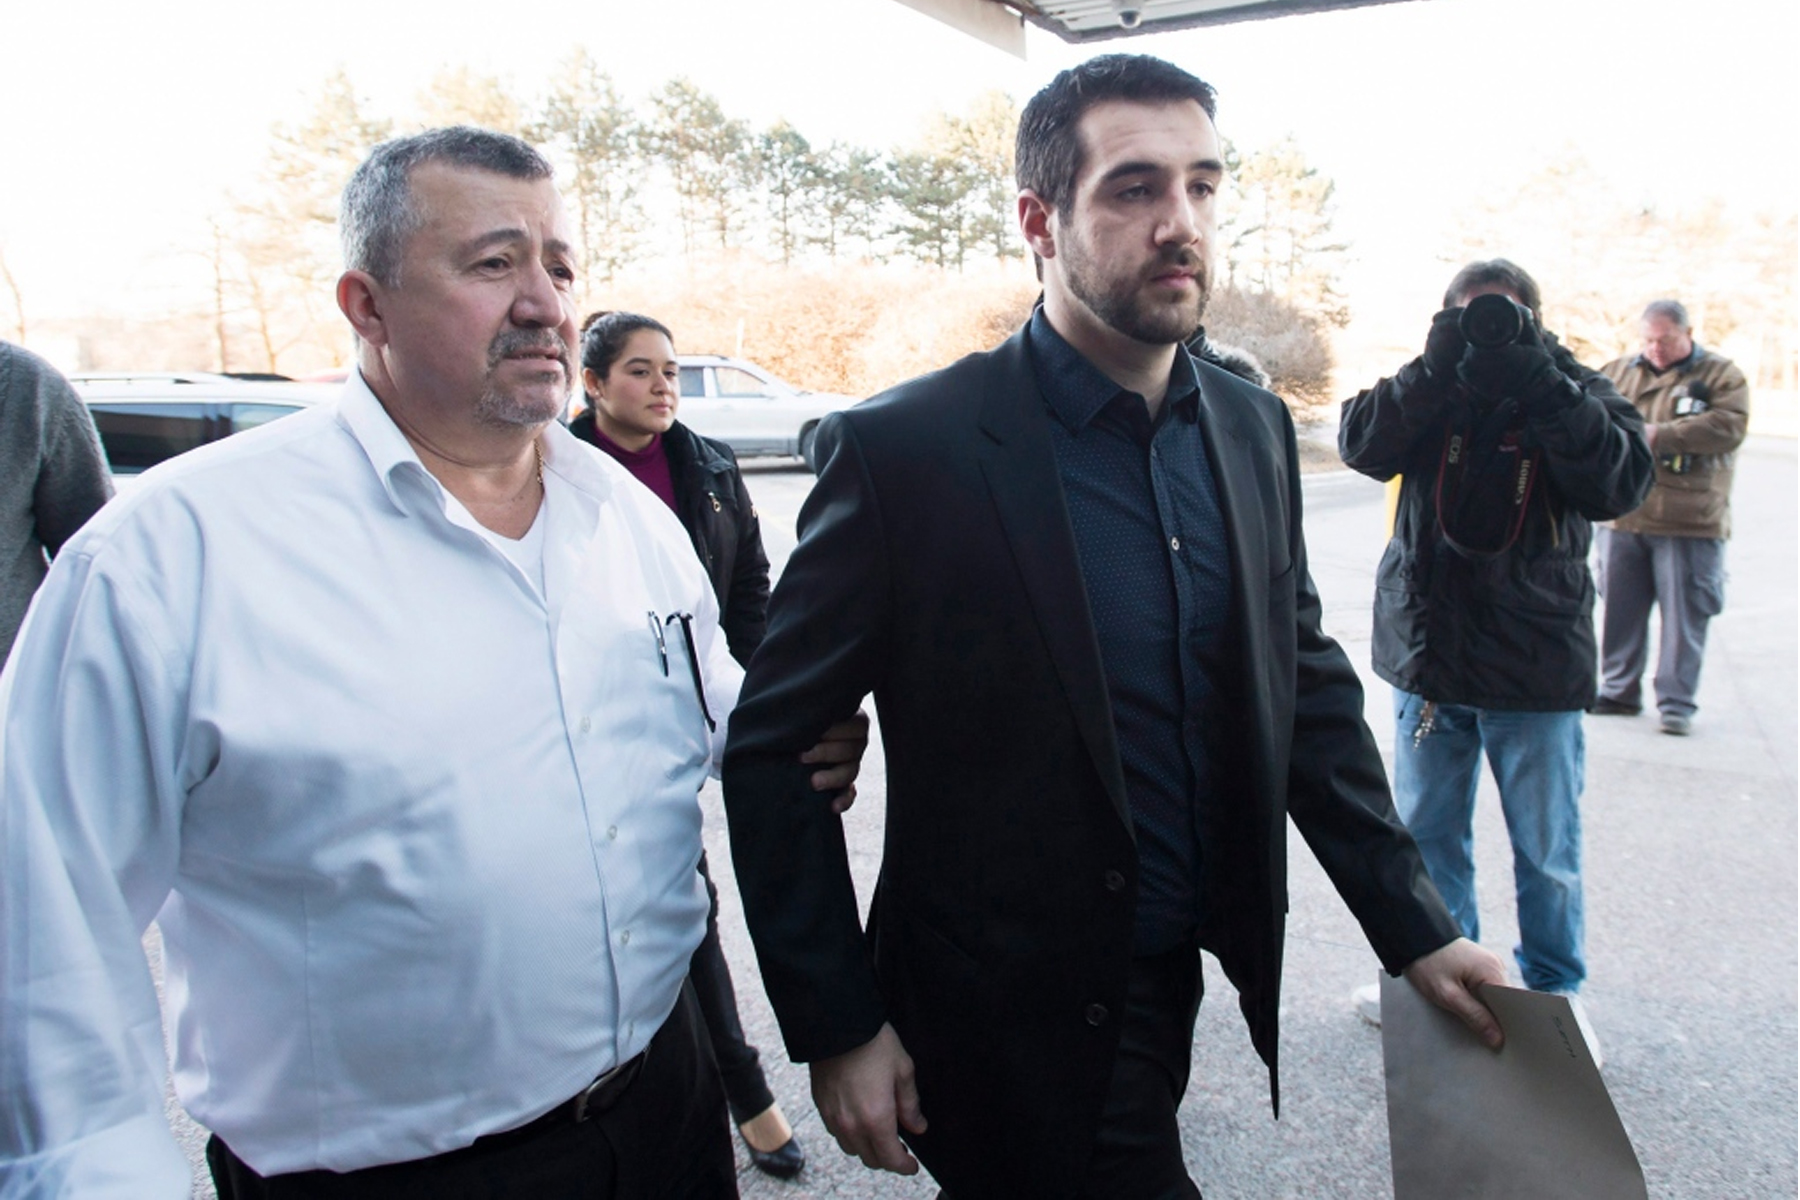 مارکو موزو راننده مست محکوم ، در دادگاه مجازی عفو مشروط گرفت